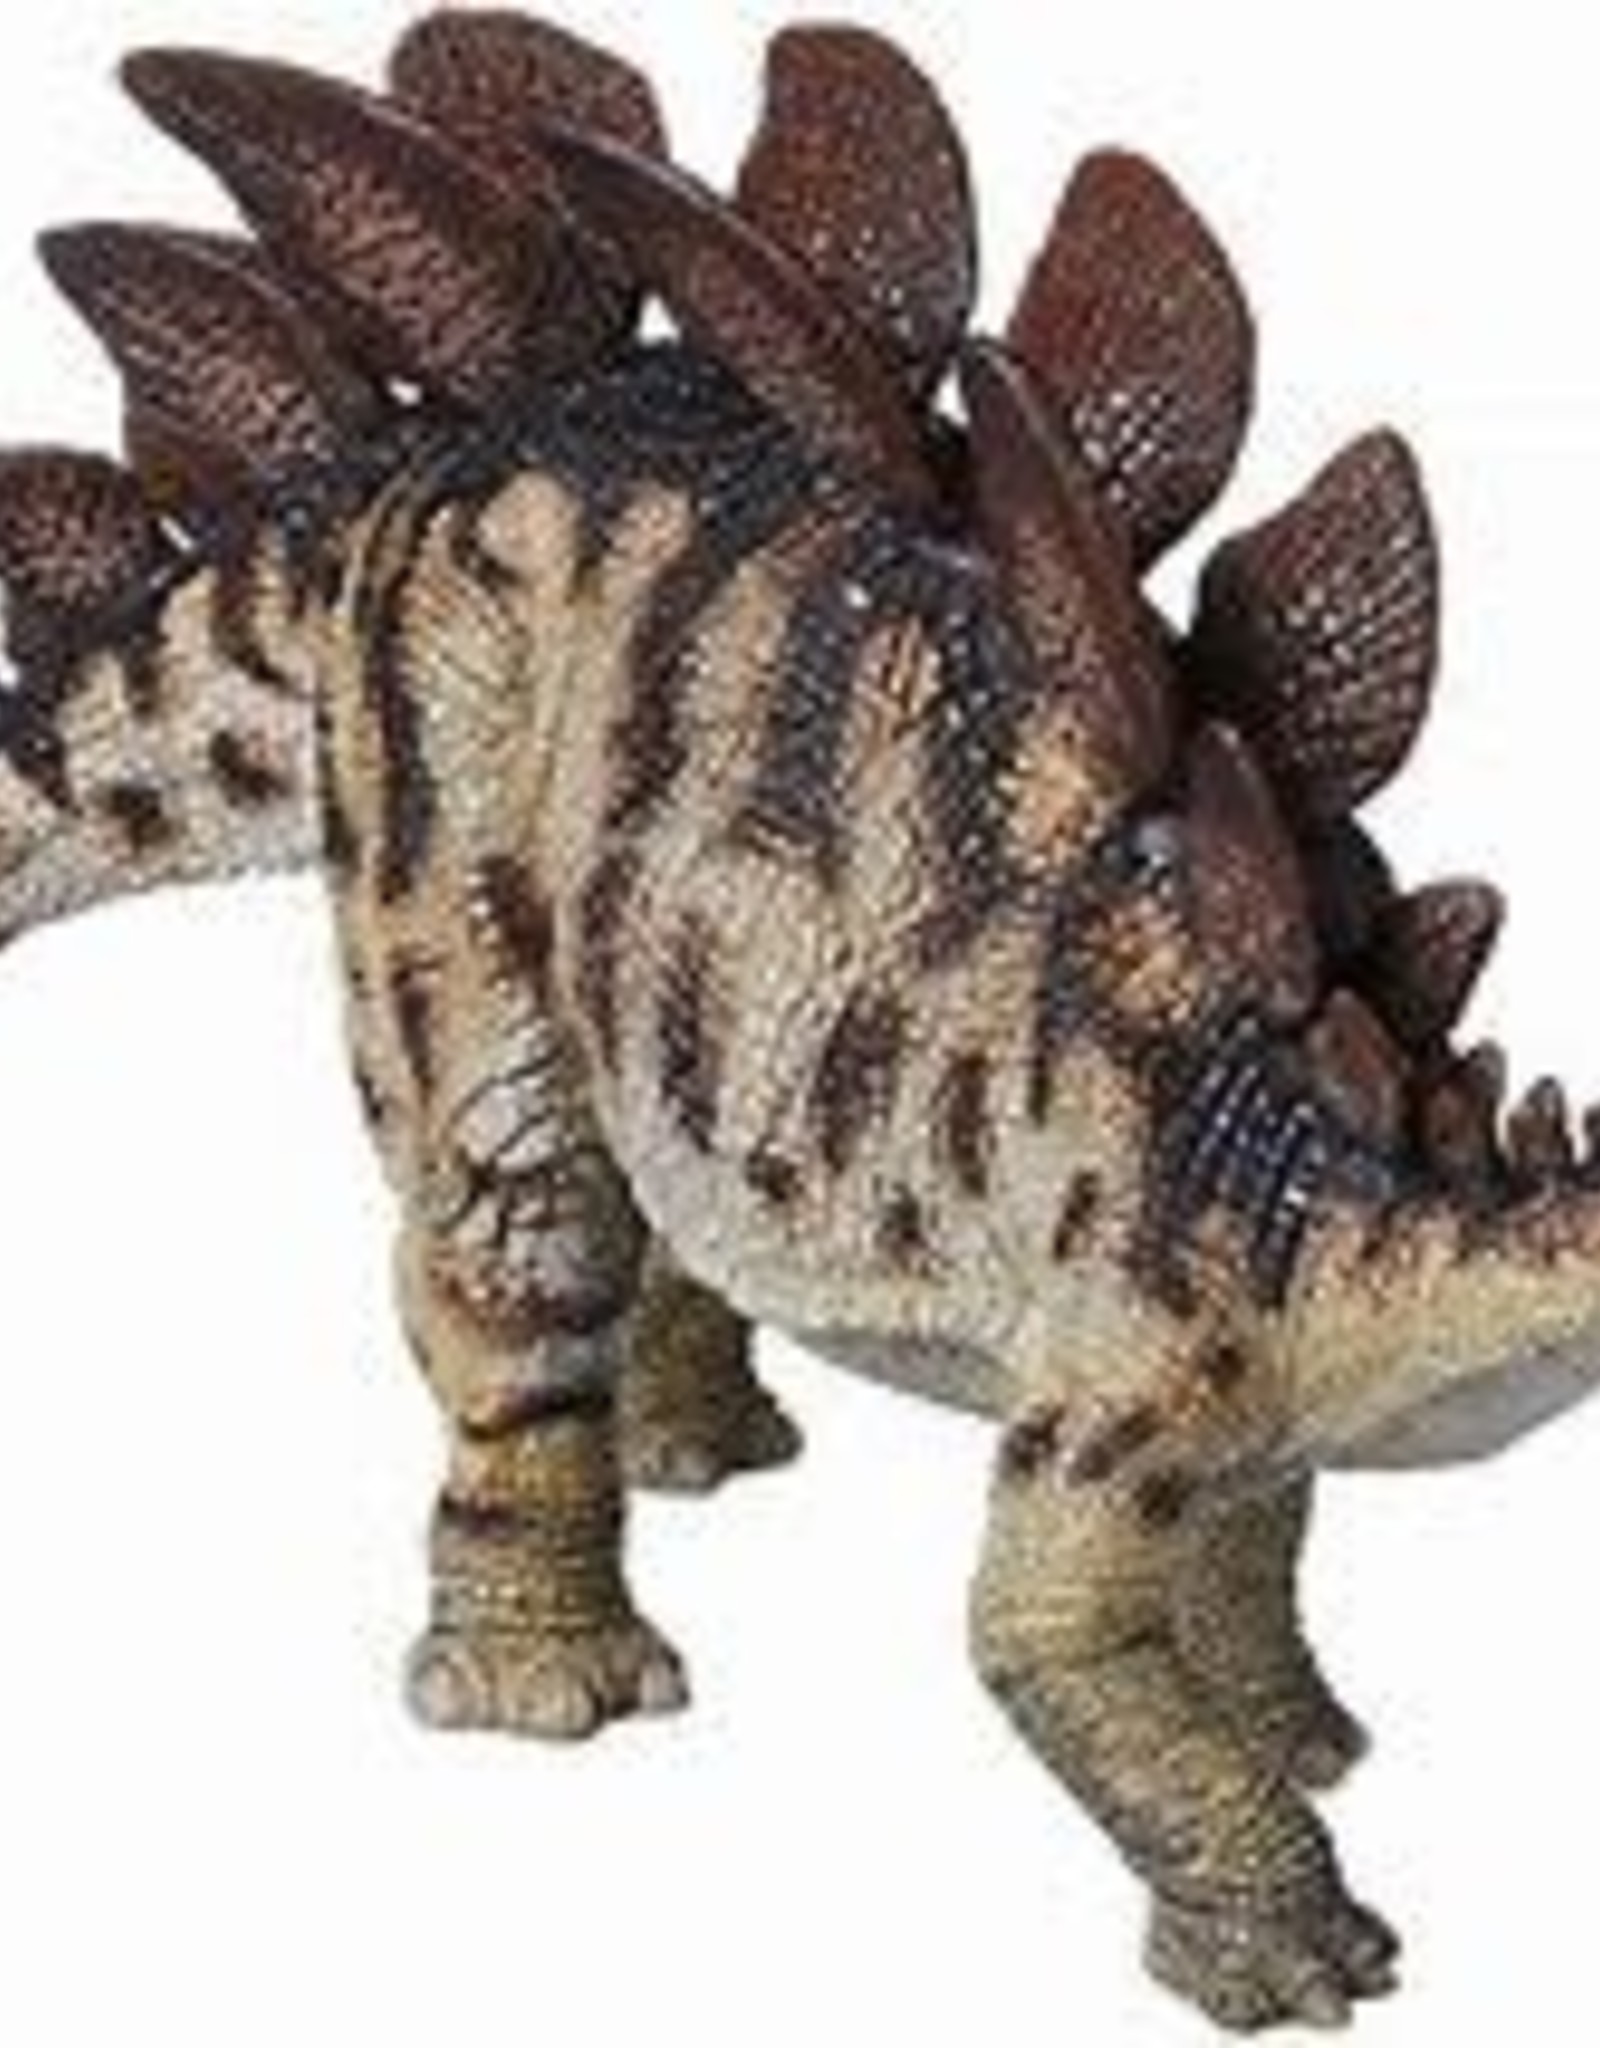 HOTALING IMPORTS Papo Stegosaurus